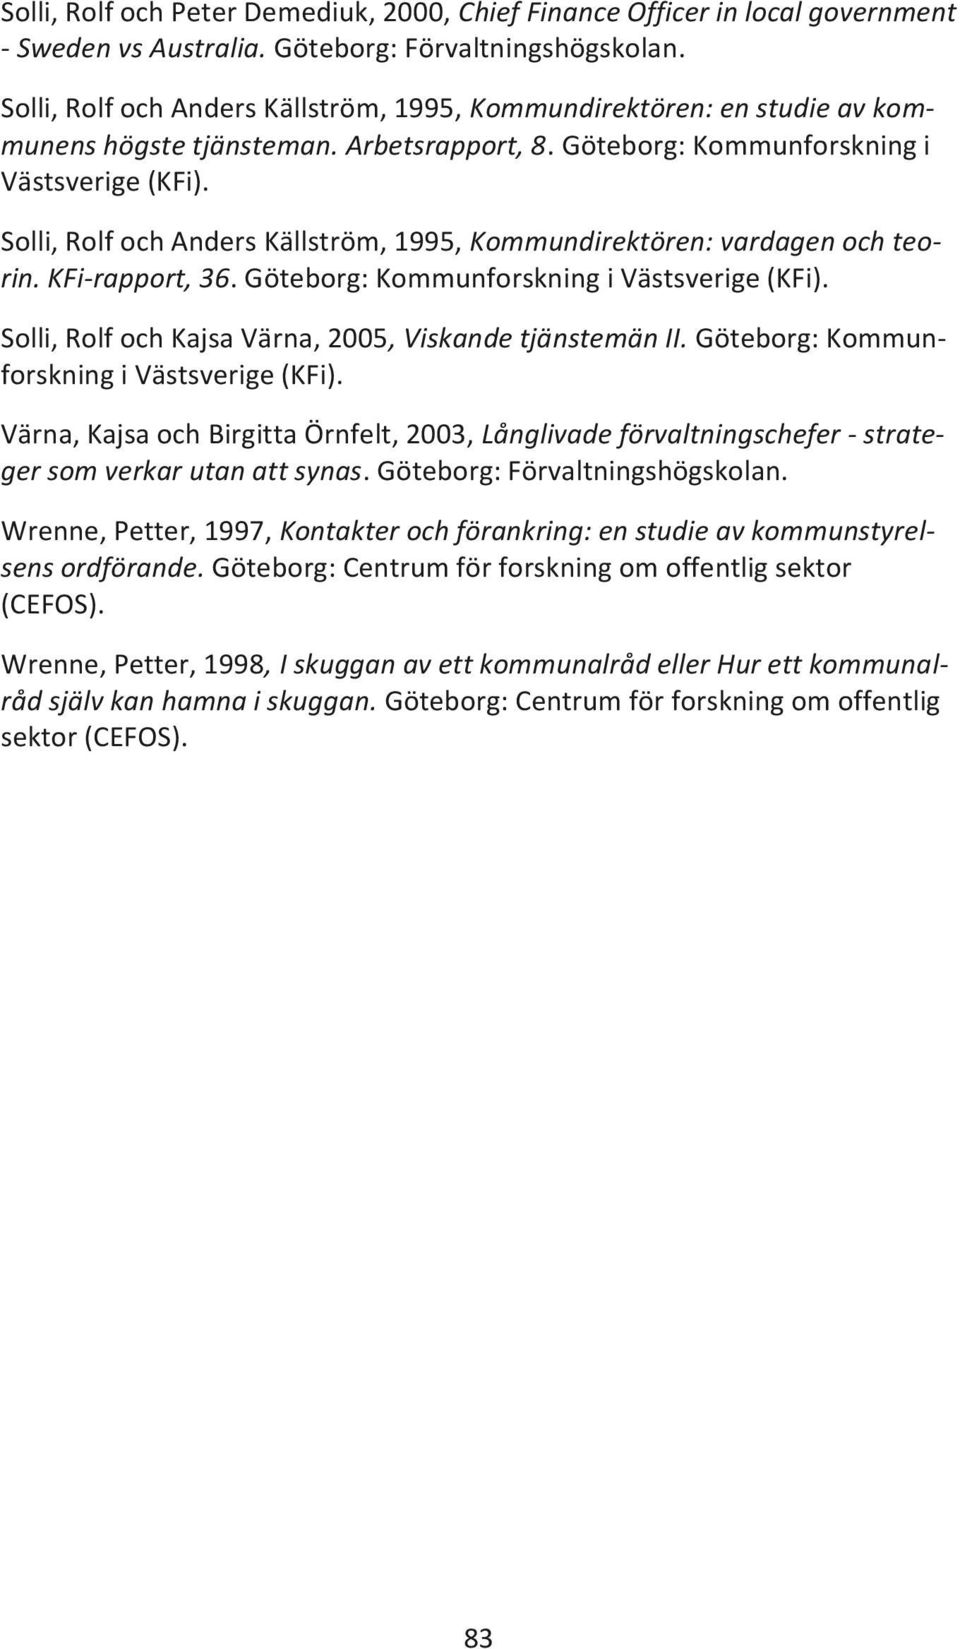 Solli, Rolf och Anders Källström, 1995, Kommundirektören: vardagen och teorin. KFi-rapport, 36. Göteborg: Kommunforskning i Västsverige (KFi).